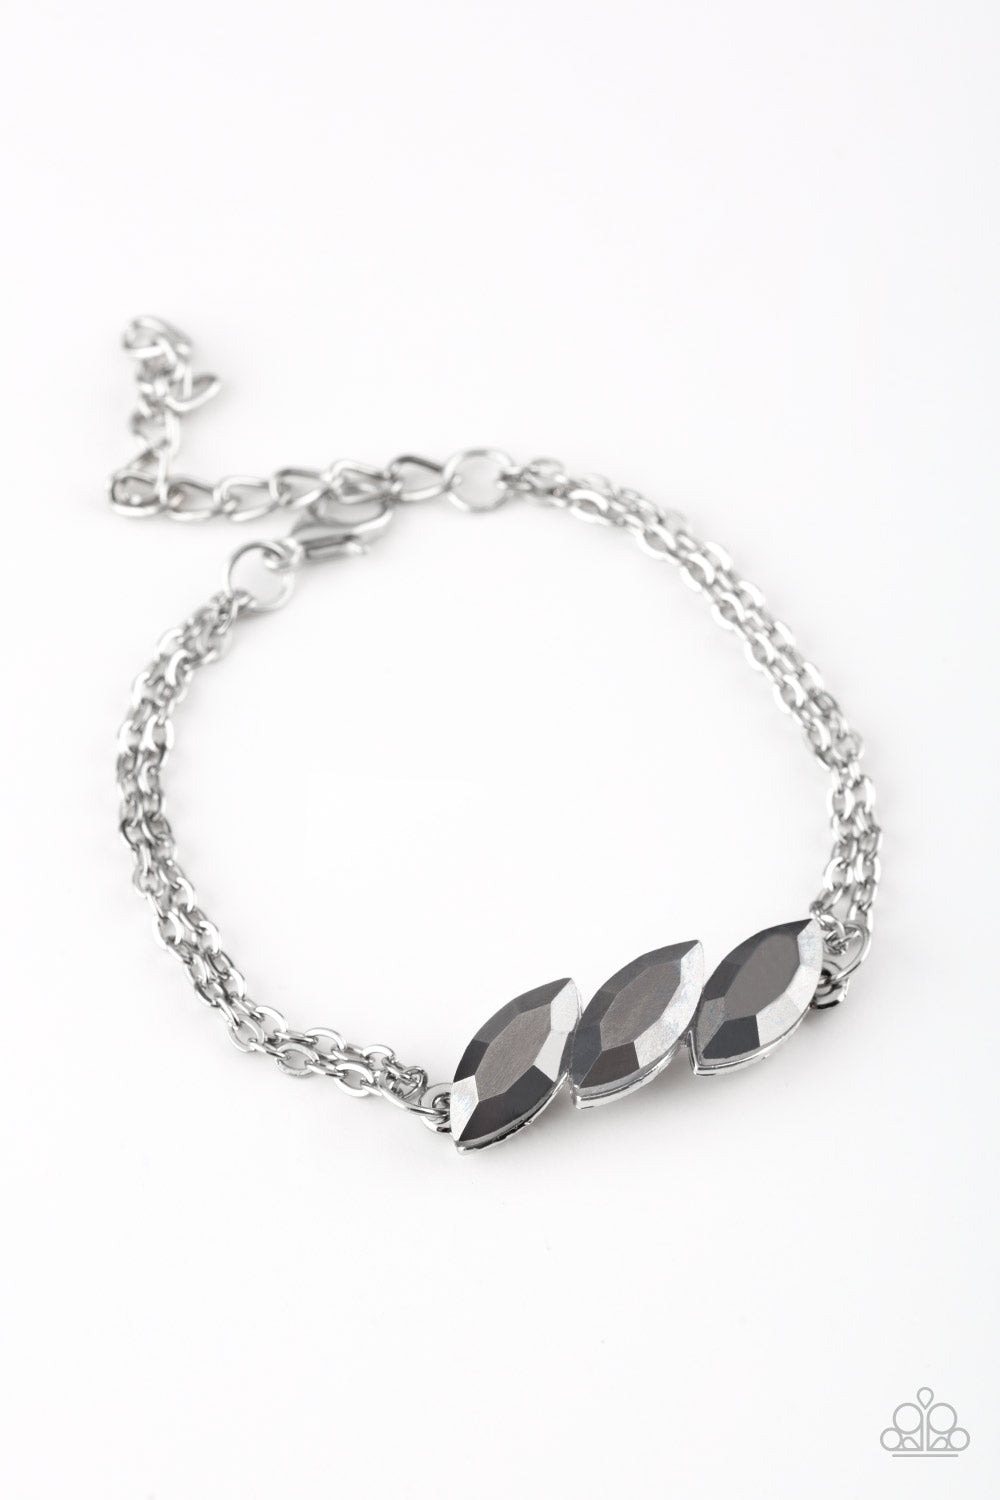 Pretty Priceless - Silver Bracelet - Princess Glam Shop